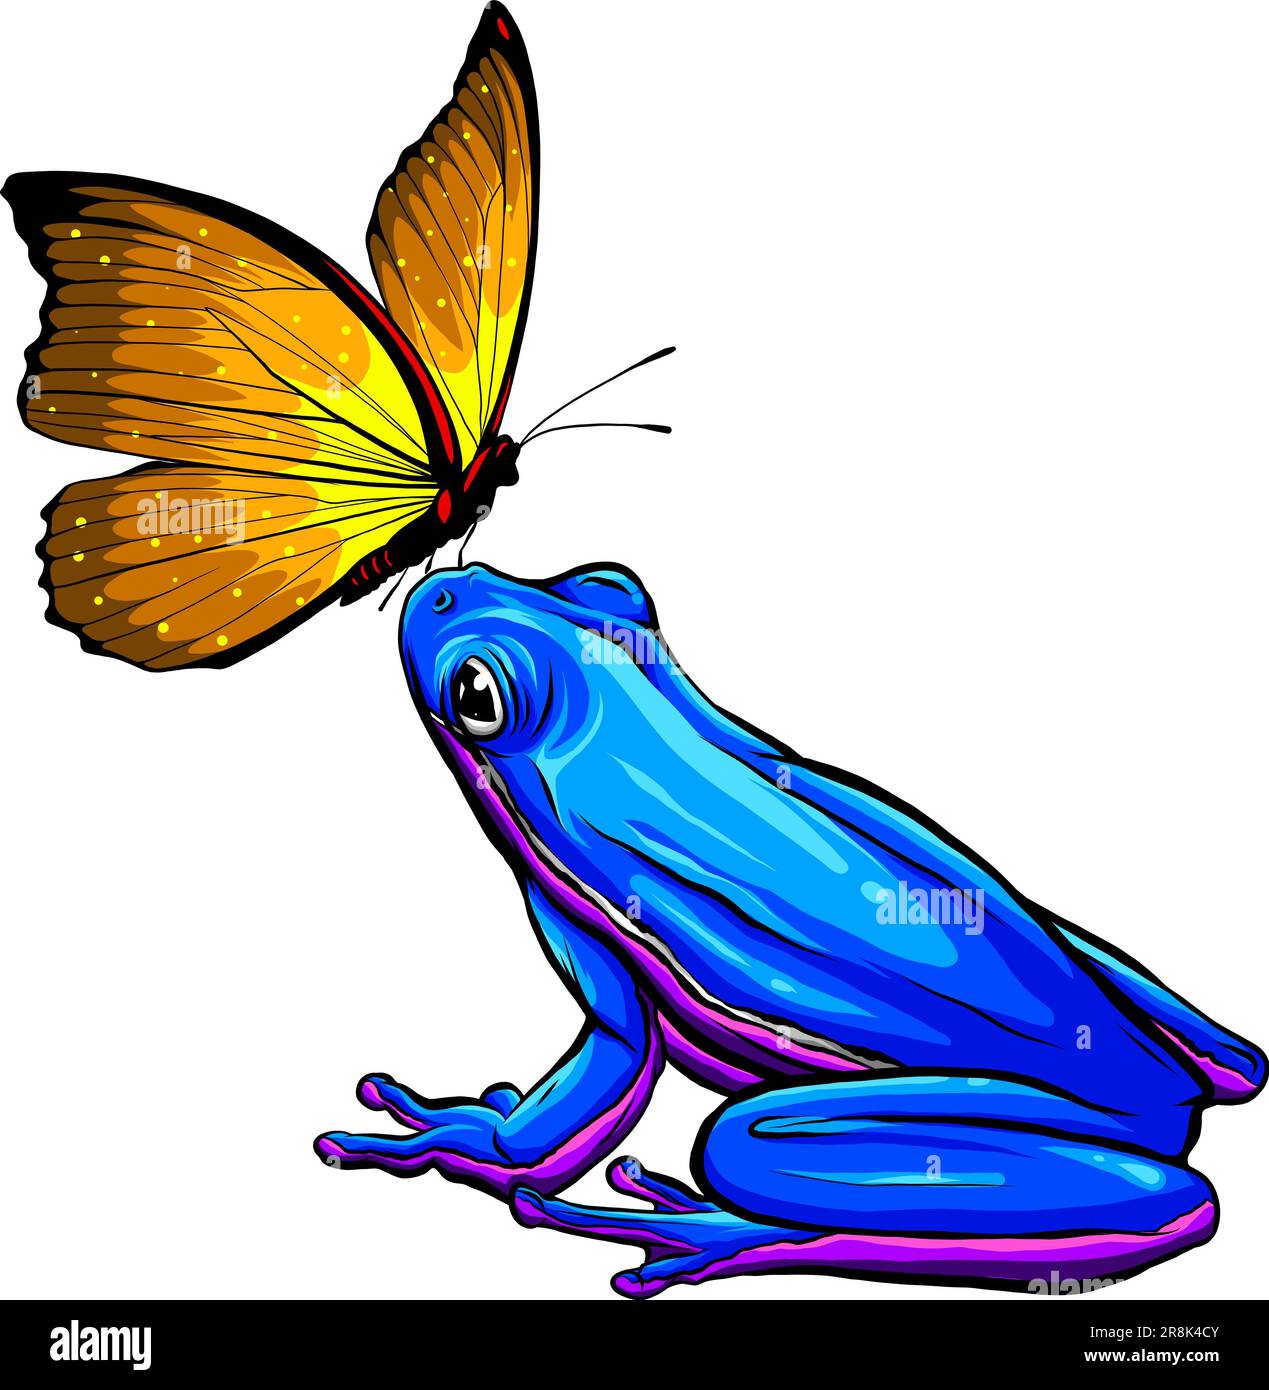 Joli papillon drôle sur l'illustration de vecteur de grenouille Illustration de Vecteur